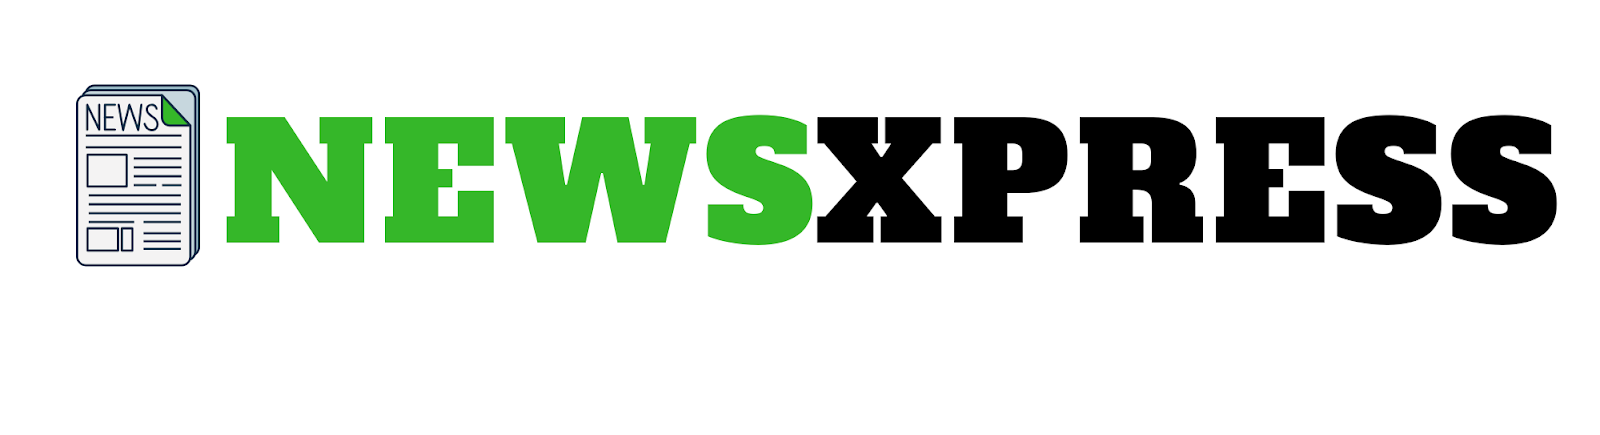 NEWSXPRESS - Best news website 2020 - top news website in world